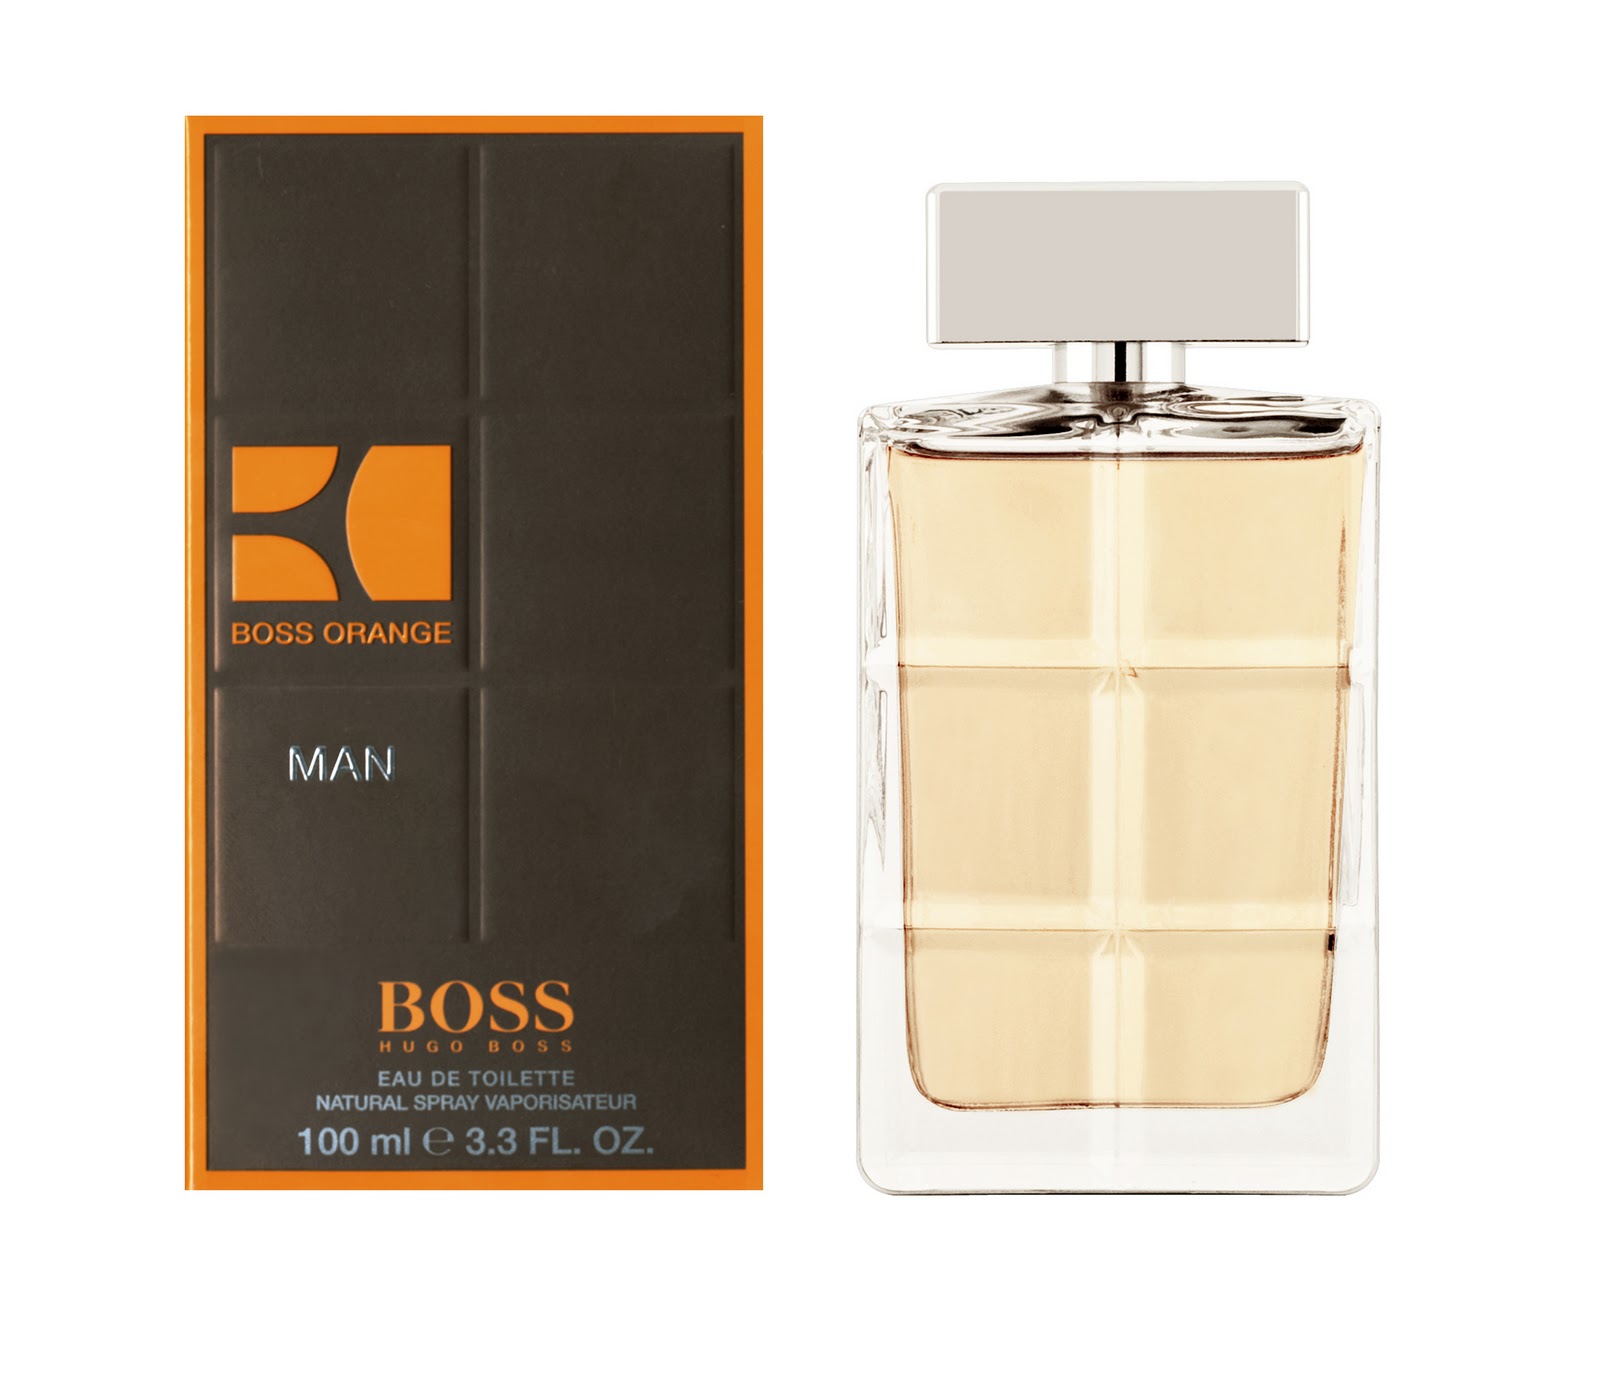 Latest Hugo Boss Perfume For Men